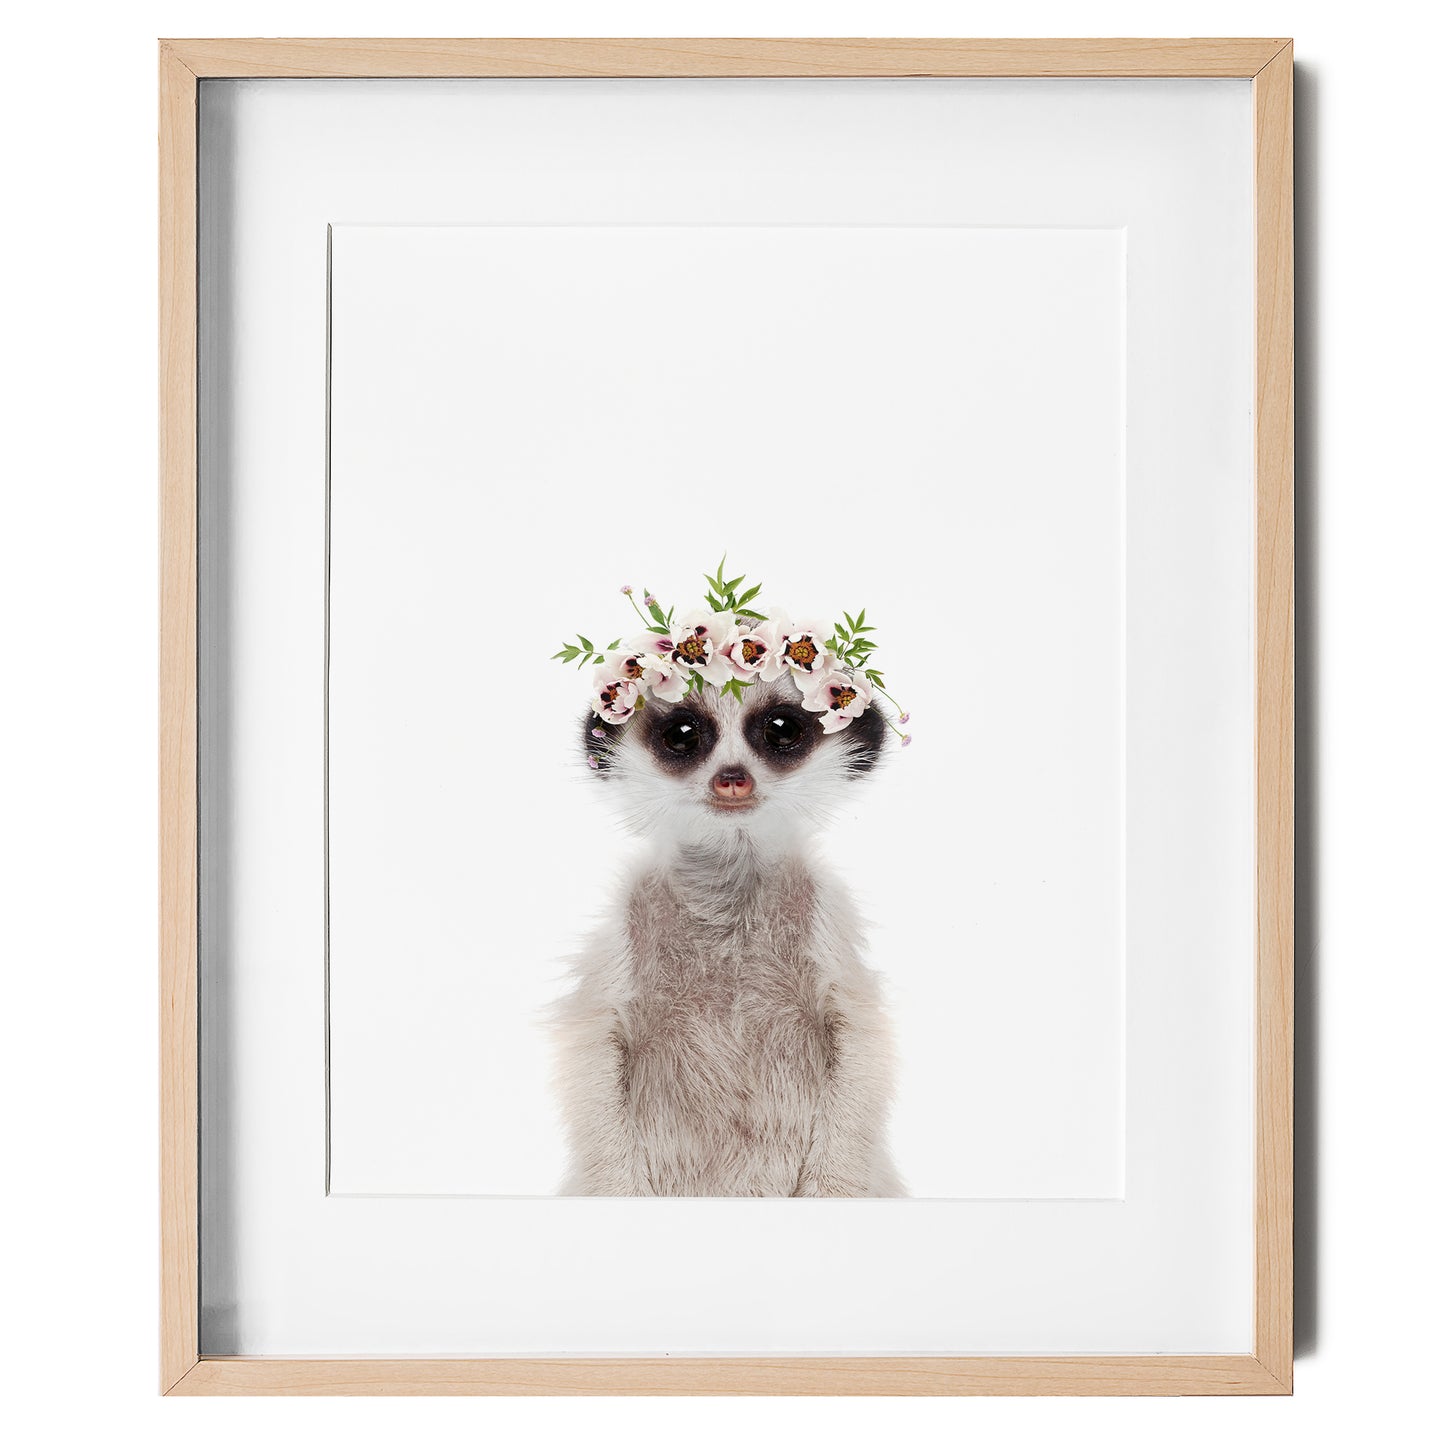 Baby Meerkat with Flower Crown nursery wall art for girls room